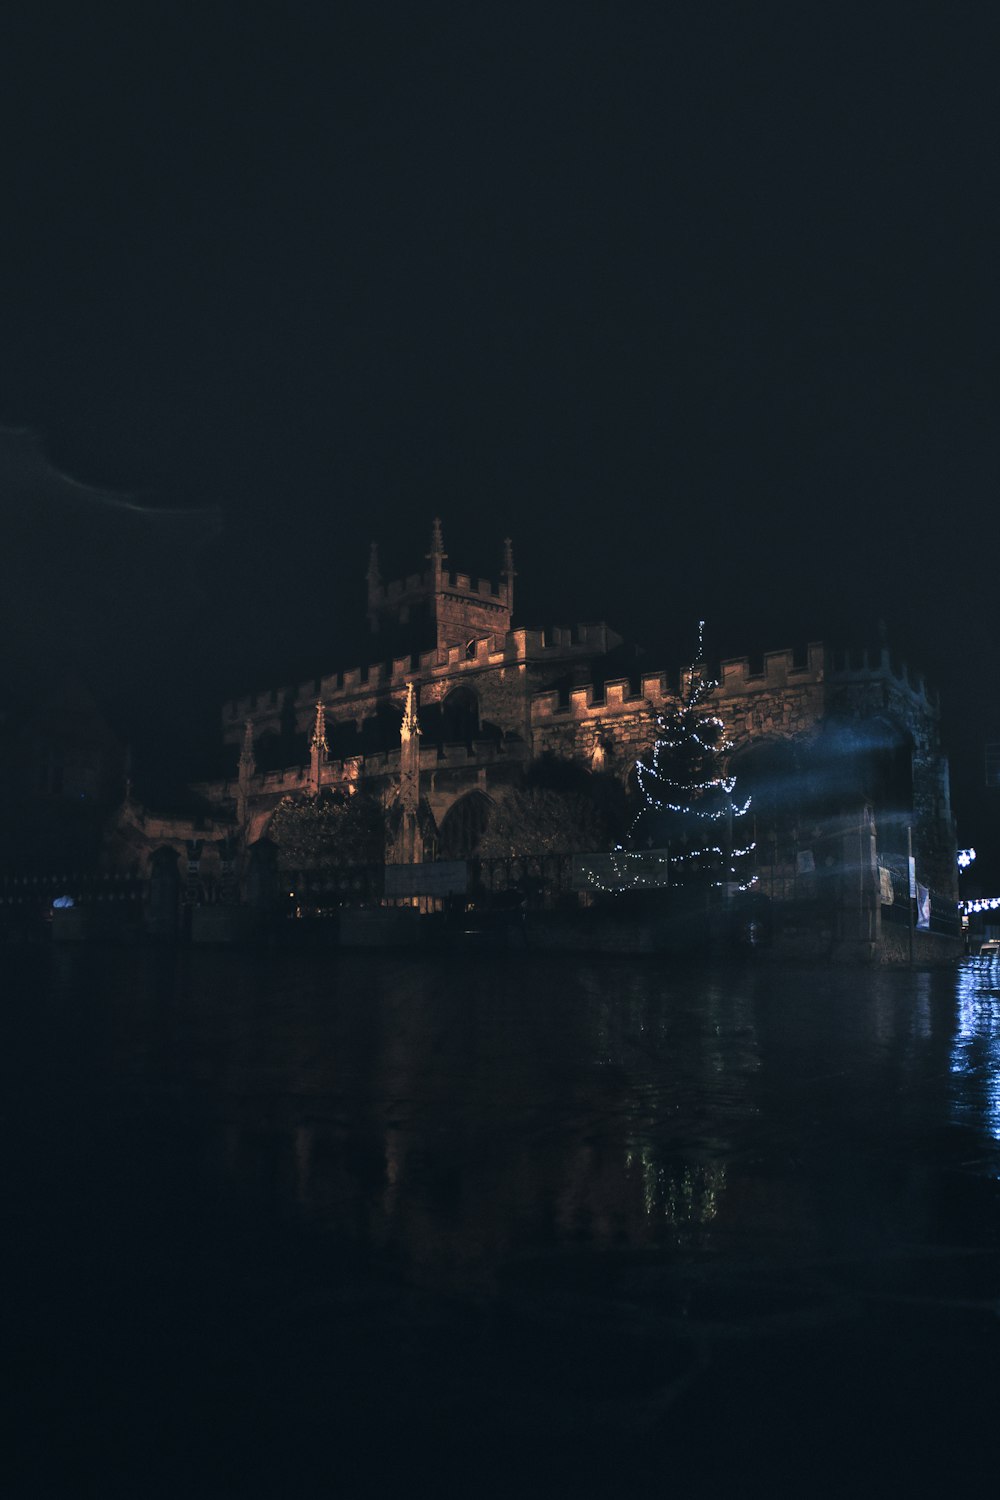 Eine nachts beleuchtete Burg mit Lichtern, die sich im Wasser spiegeln